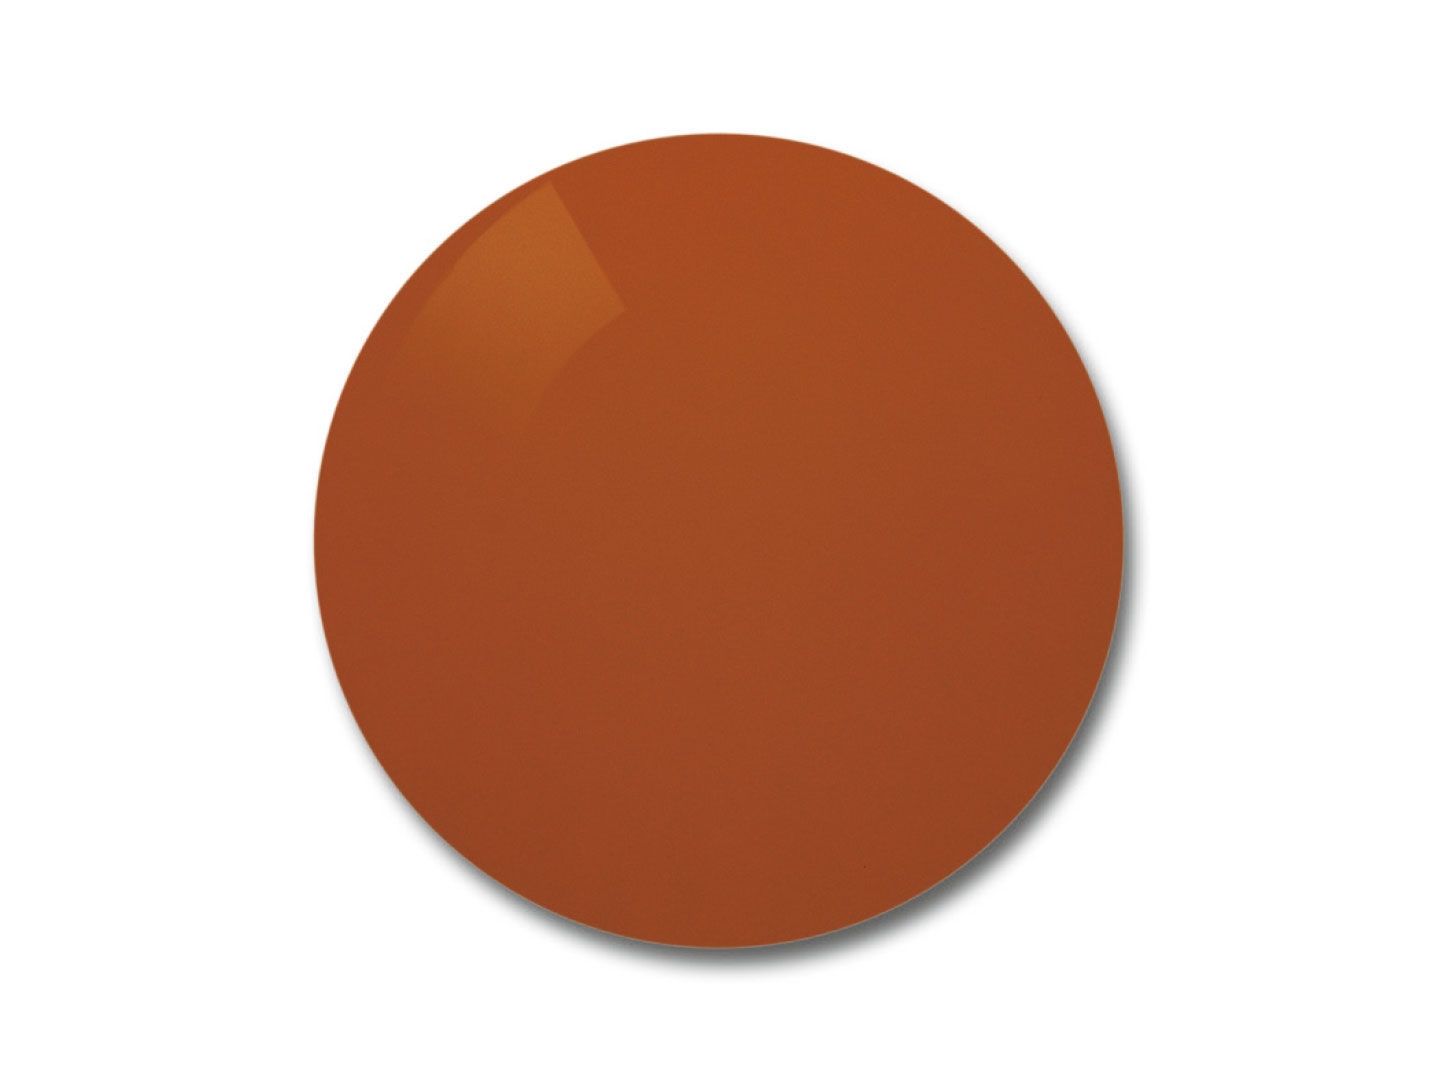 Ilustración de lentes Skylet® Fun de ZEISS con tinte marrón anaranjado